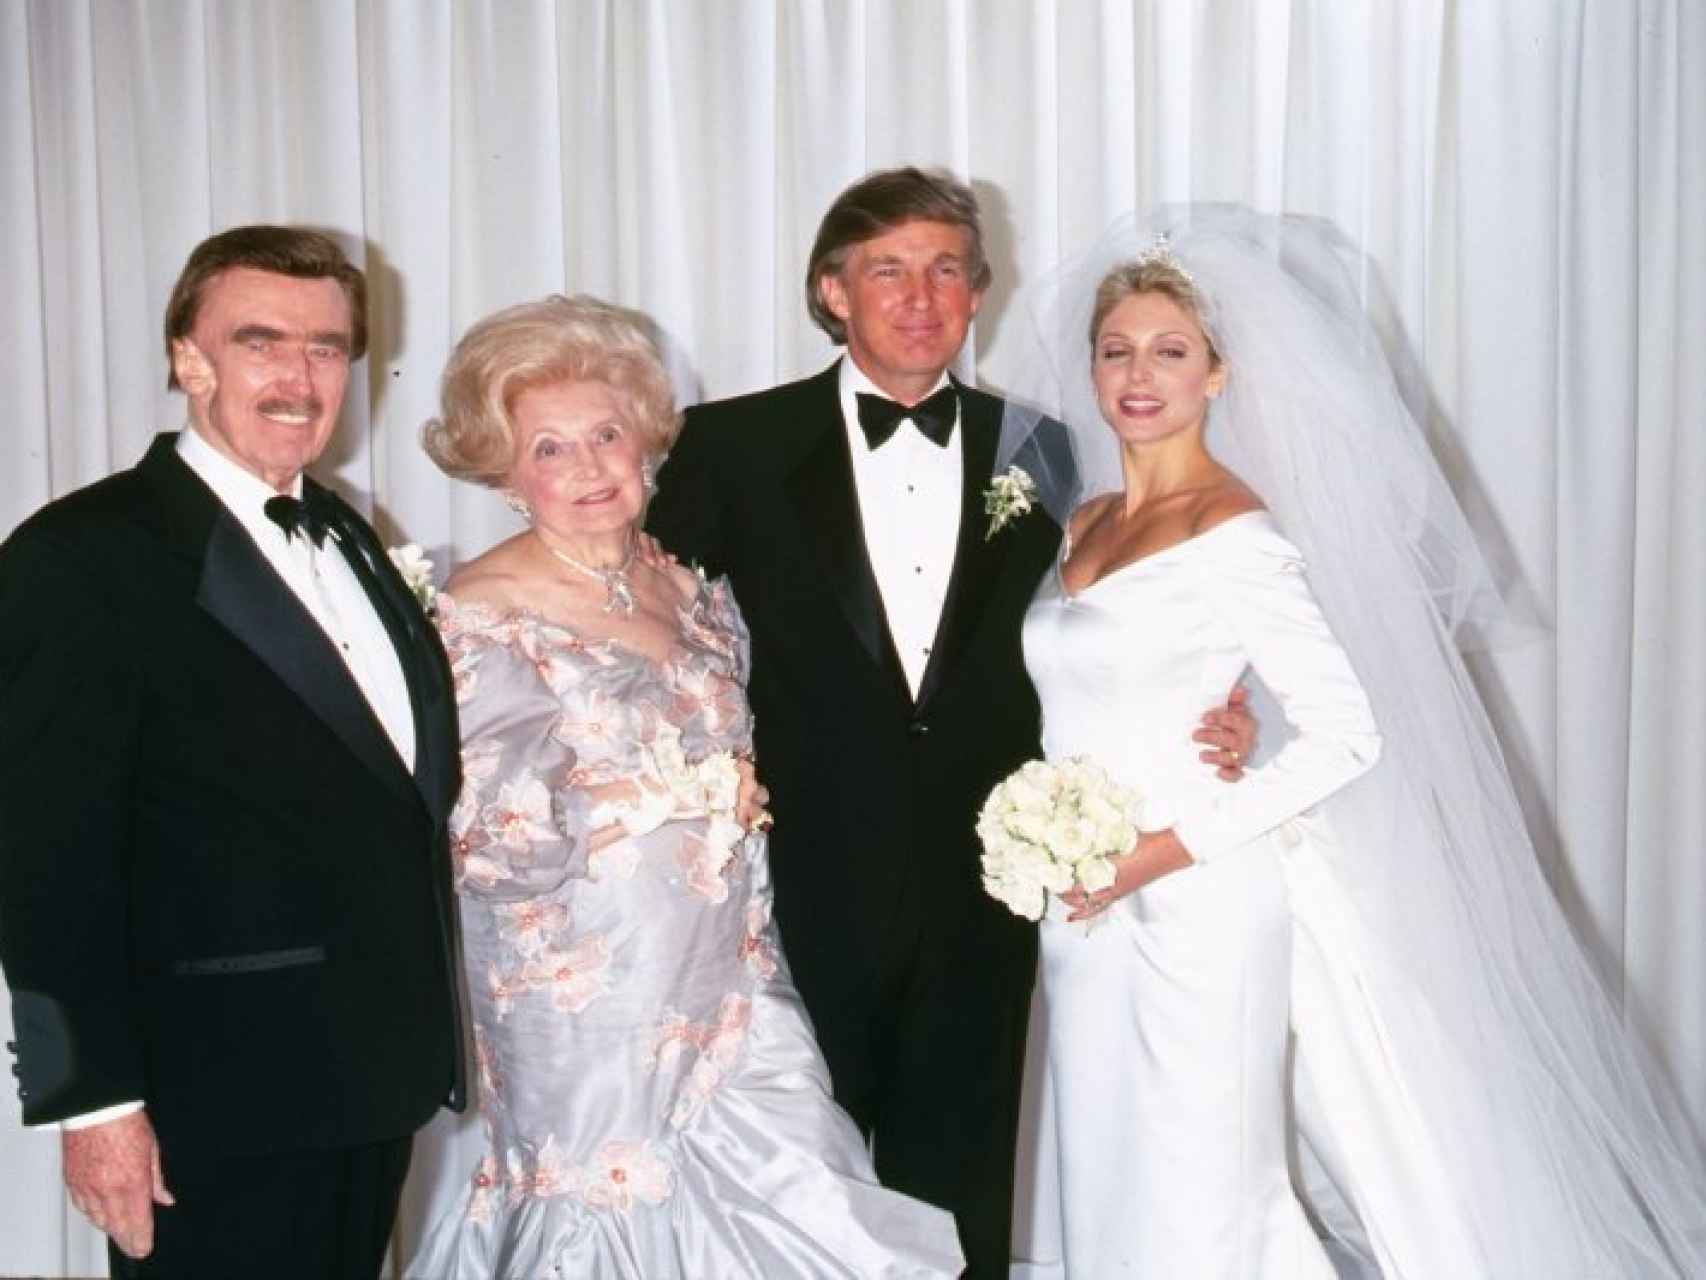 Donald Trump junto a sus padres en 1993 cuando contrajo matrimonio con Marla Maples, su segunda esposa.